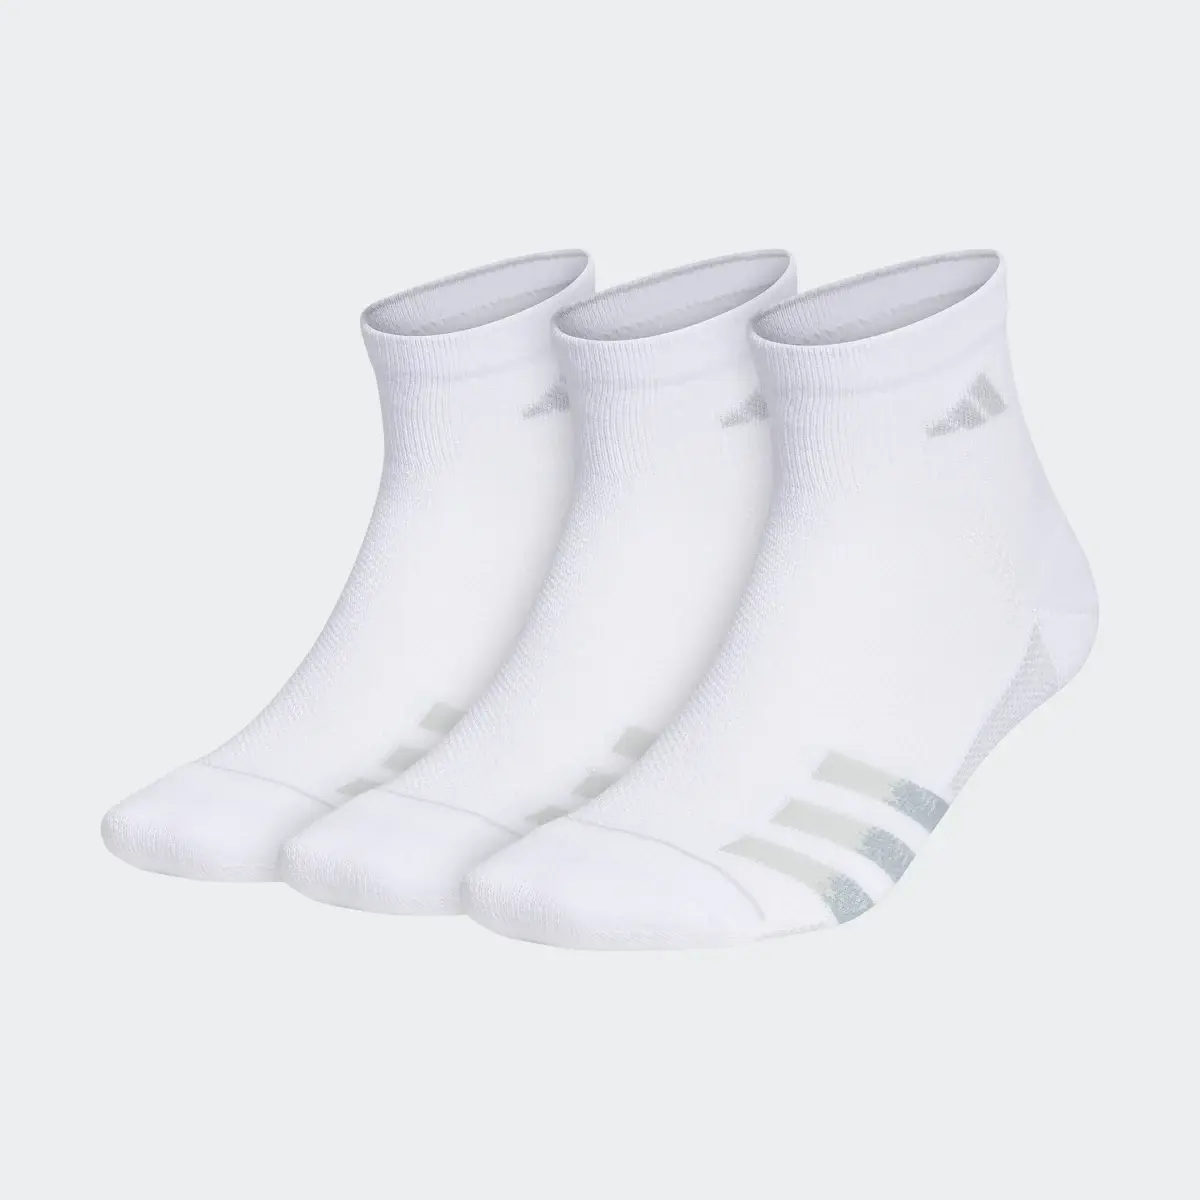 Adidas Superlite Quarter Socks 3 Pairs. 2